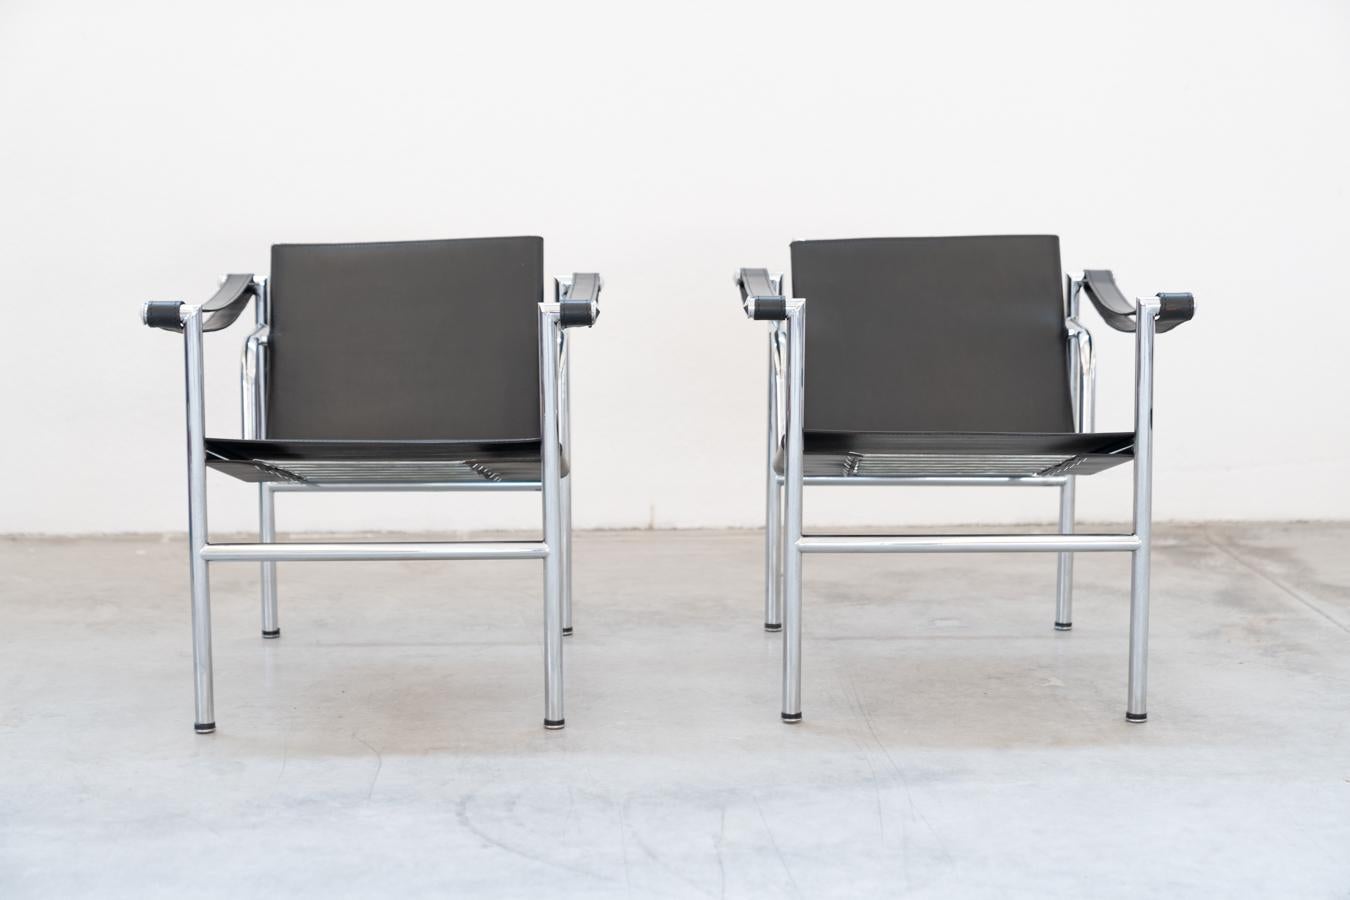 Paire de fauteuils LC1 par Le Corbusier, pour Cassina 1970
Un morceau de l'histoire du design du LC1 de Le Corbusier. La conception 			remonte à 1928. Des fauteuils simples, dans leur design avant-gardiste de l'époque 			années 1920, à une époque où